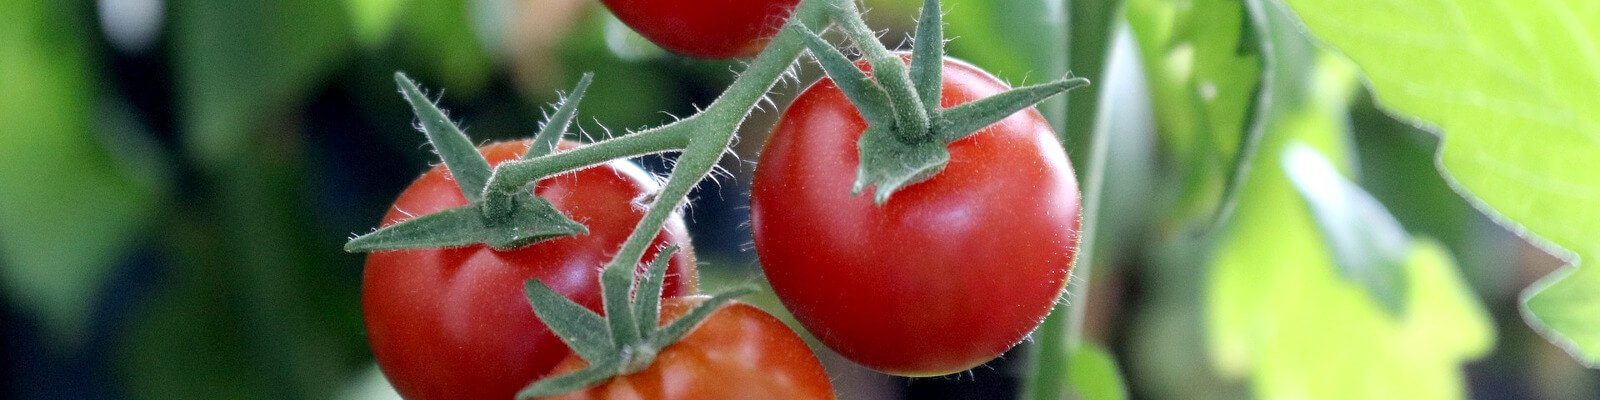 Tomaten und gemacht: vom leicht düngen Infos Profi Tipps